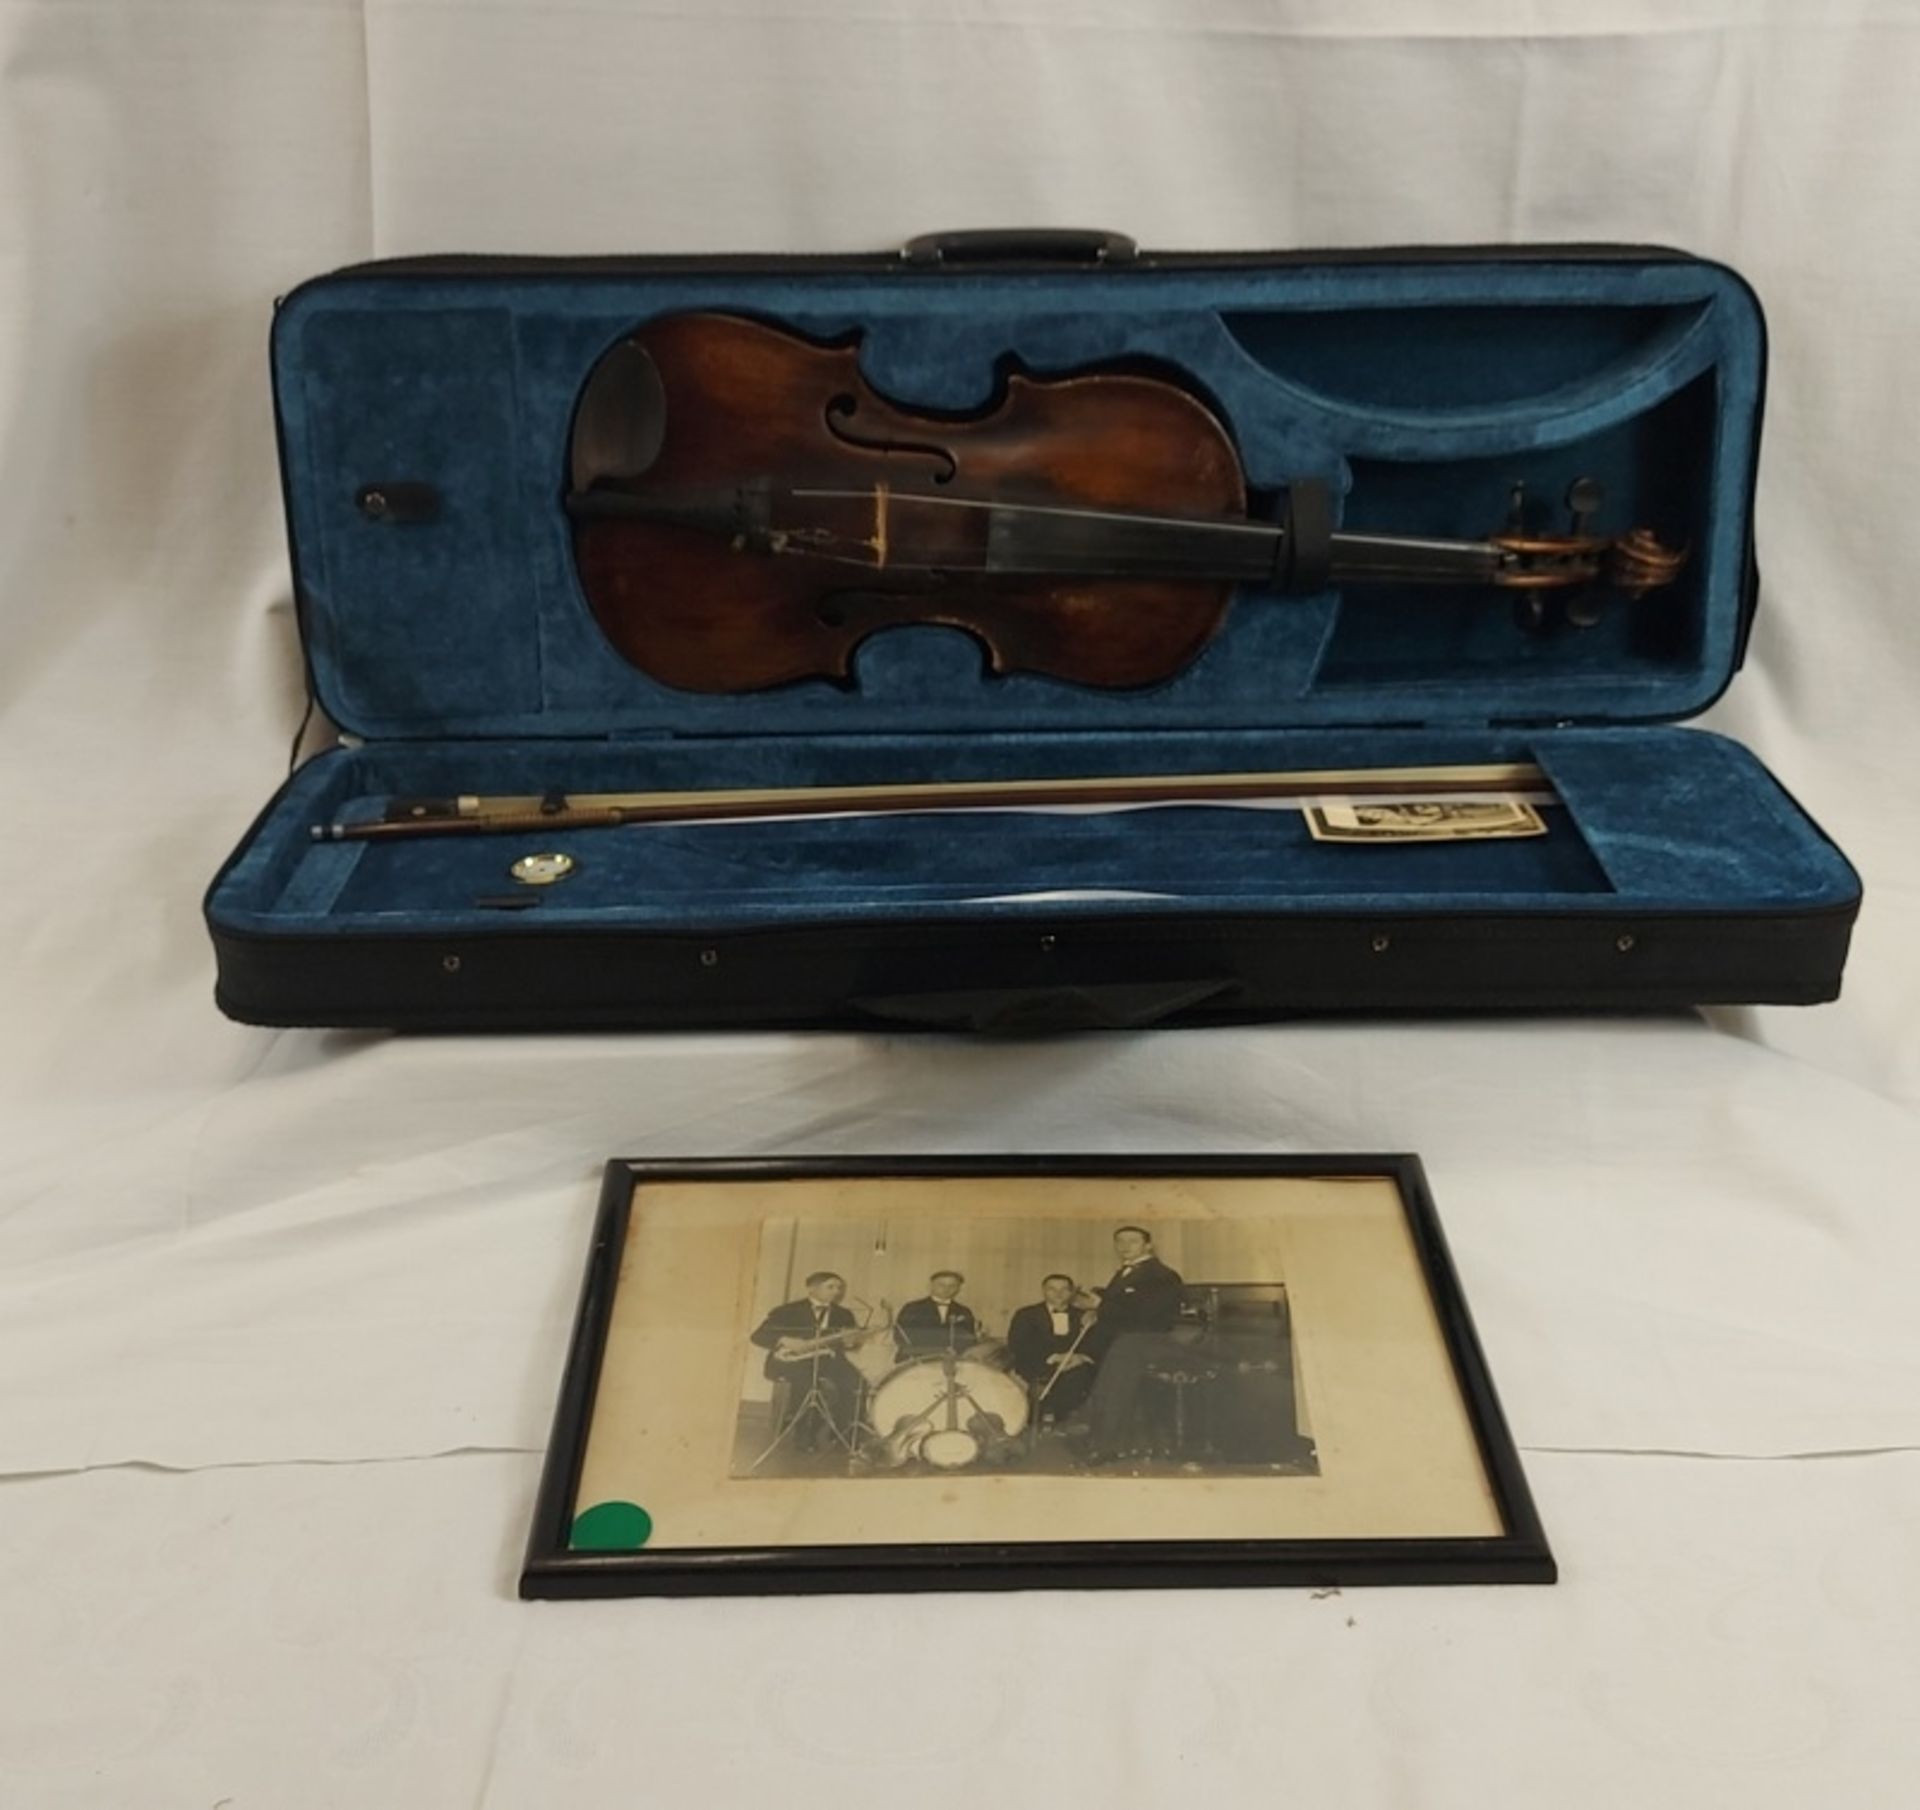 Solide alte Geige incl. Koffer und orig. Fotographie des Musikers 30er Jahre - Bild 10 aus 17